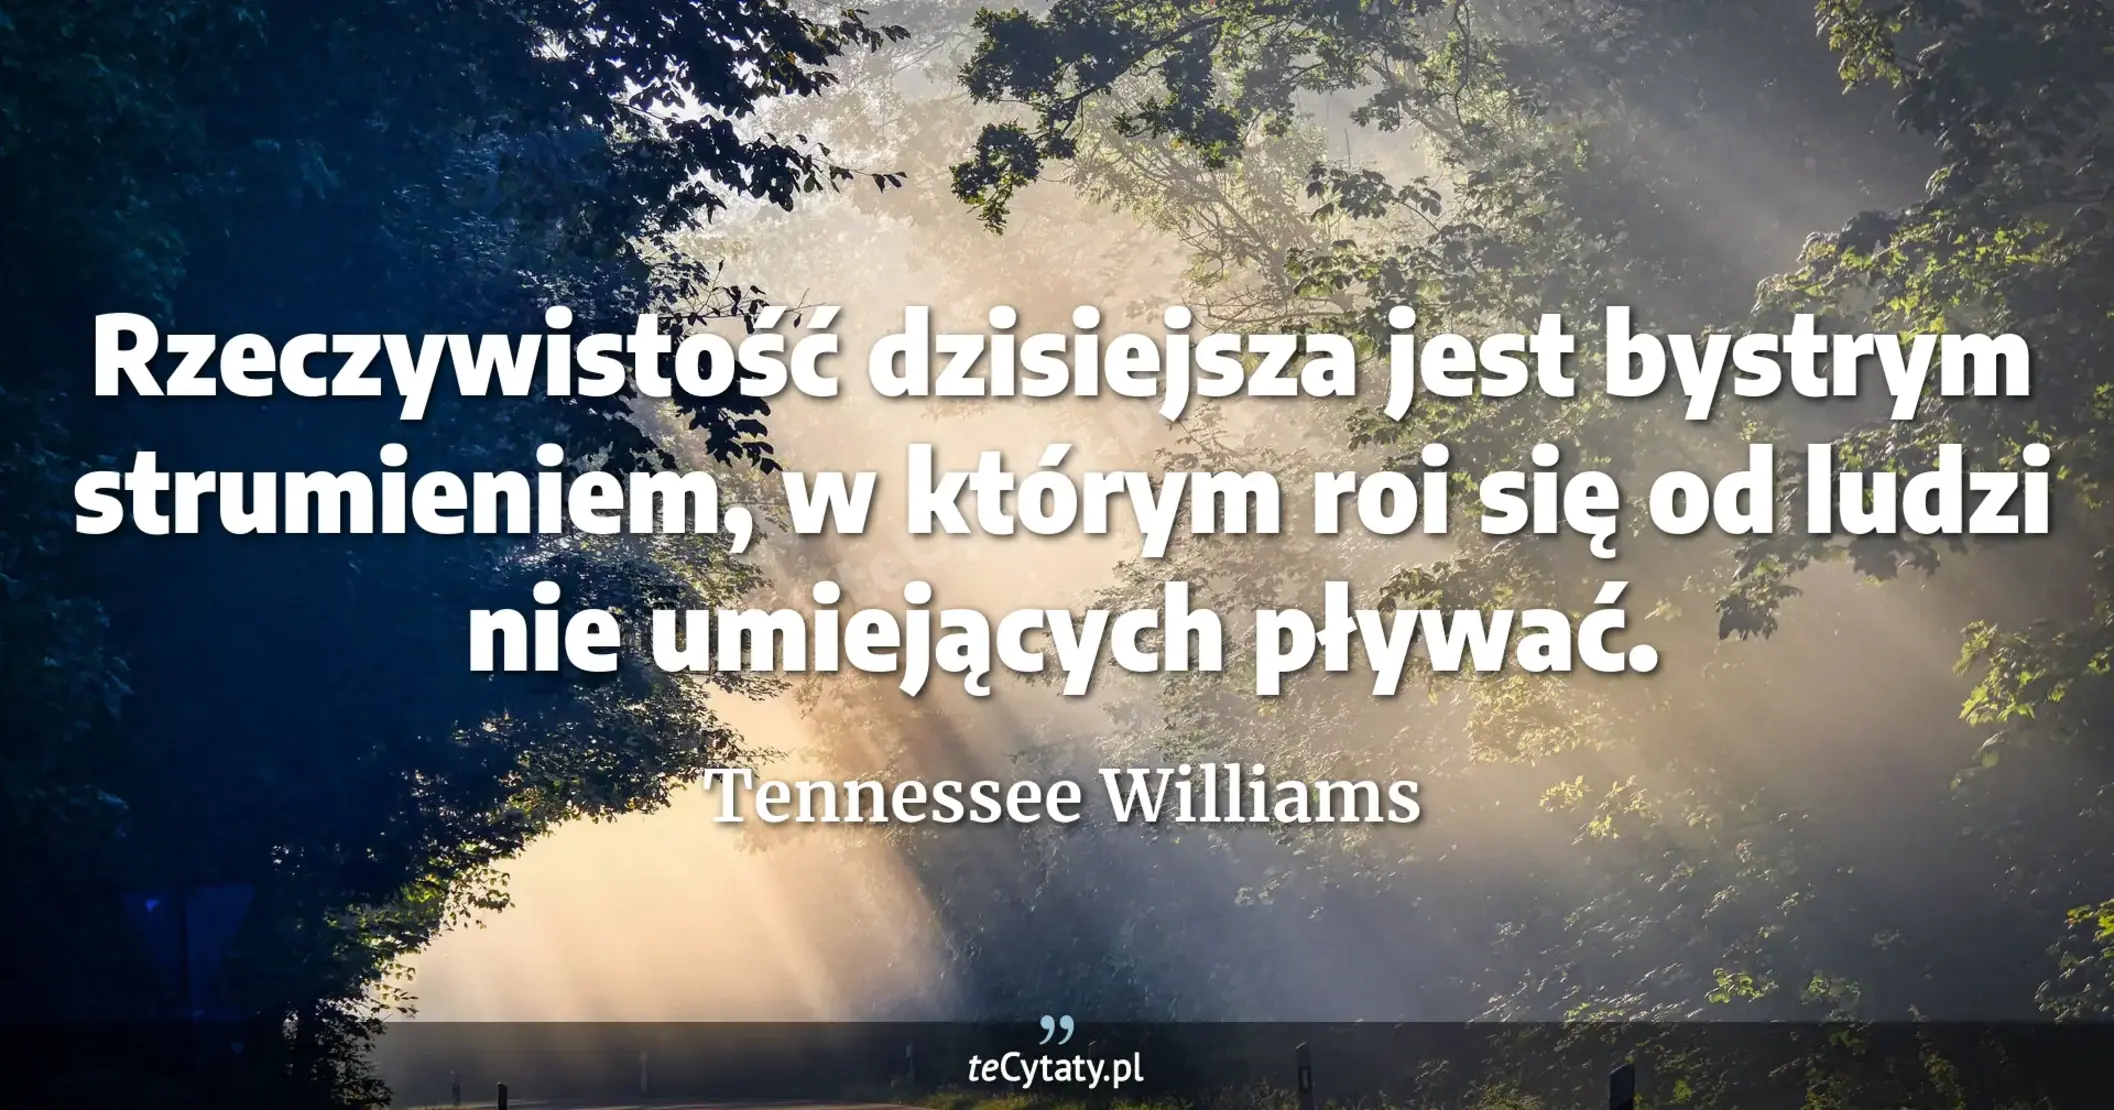 Rzeczywistość dzisiejsza jest bystrym strumieniem, w którym roi się od ludzi nie umiejących pływać. - Tennessee Williams